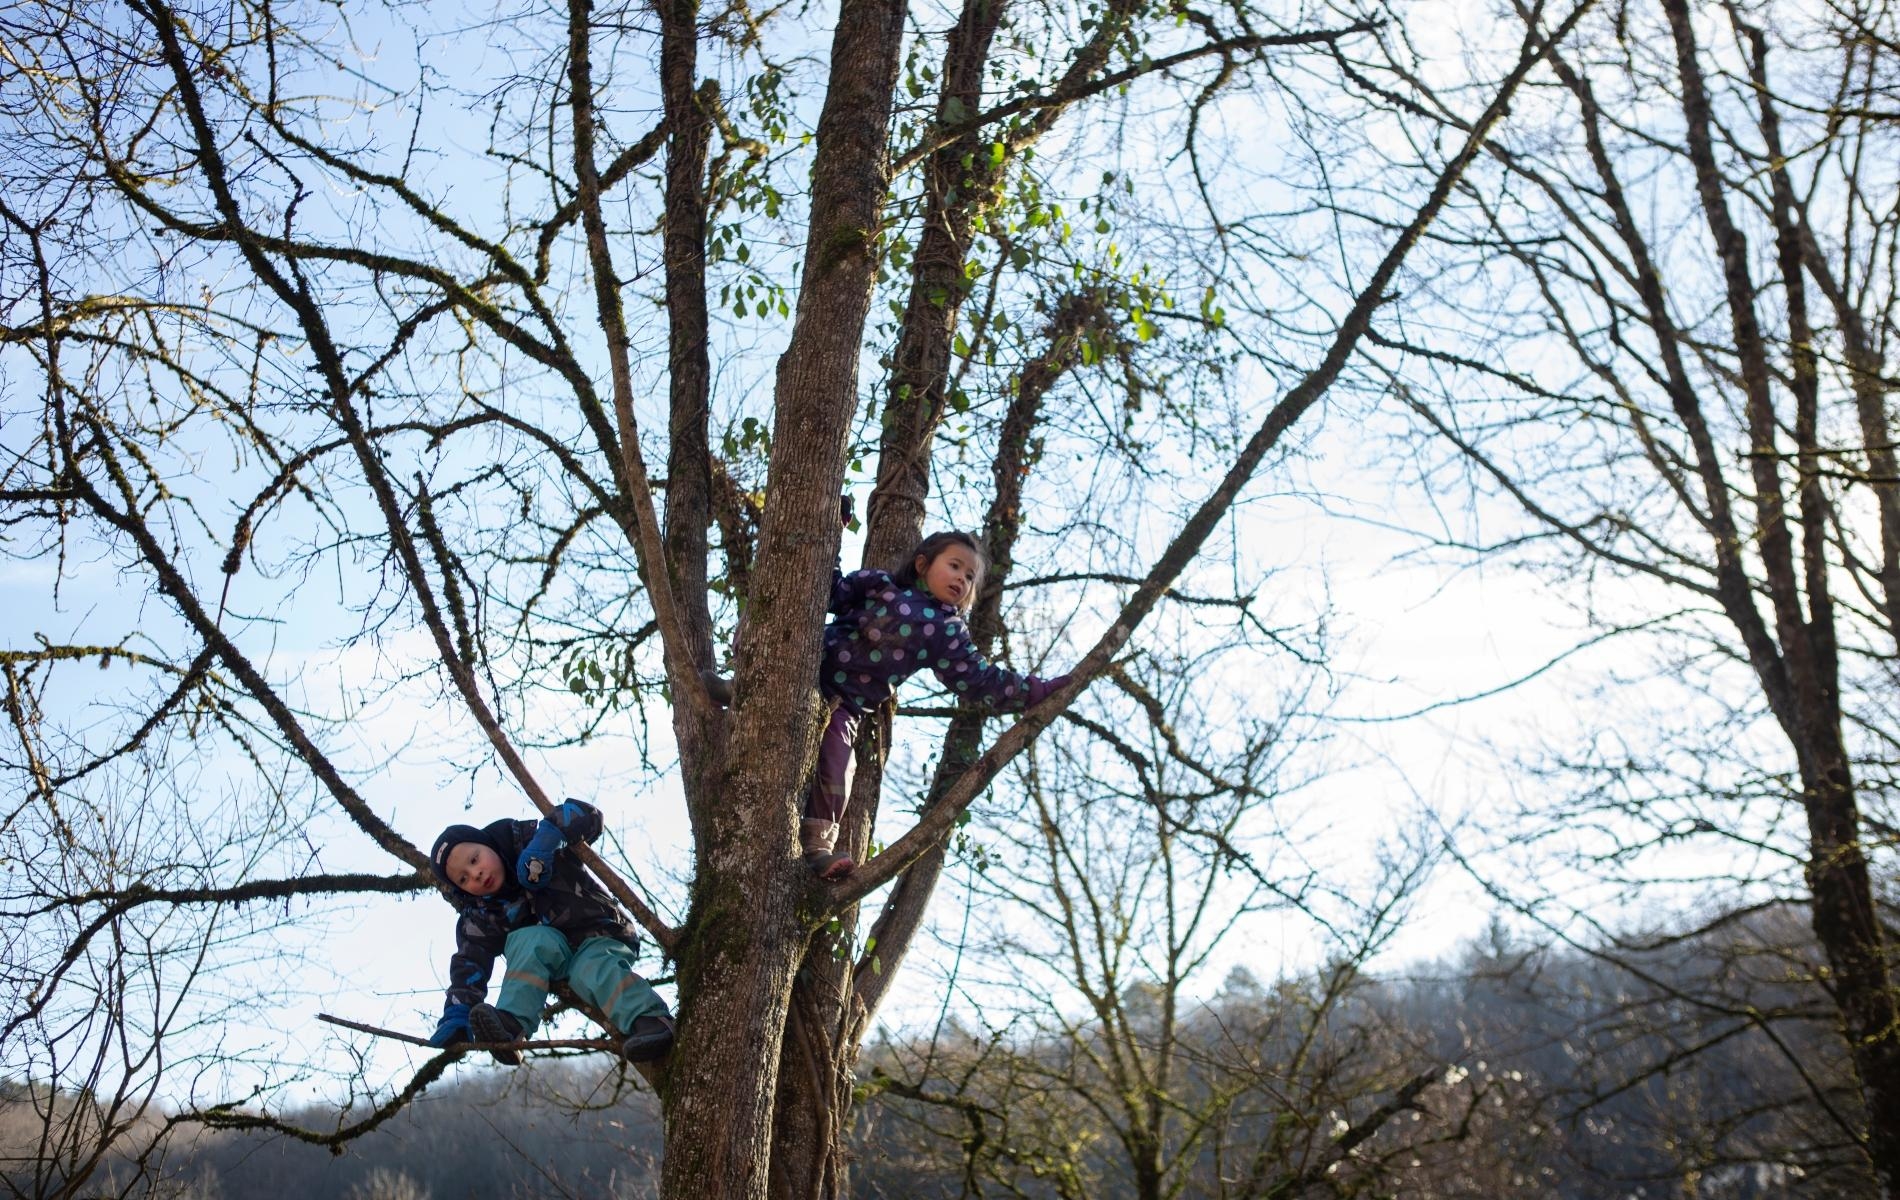 Prônant la pédagogie par la nature, l’association l’Éveil en forêt gère une écocrèche située à Dardagny, près de Genève, une région riche en biodiversité.  Axelle de Russé